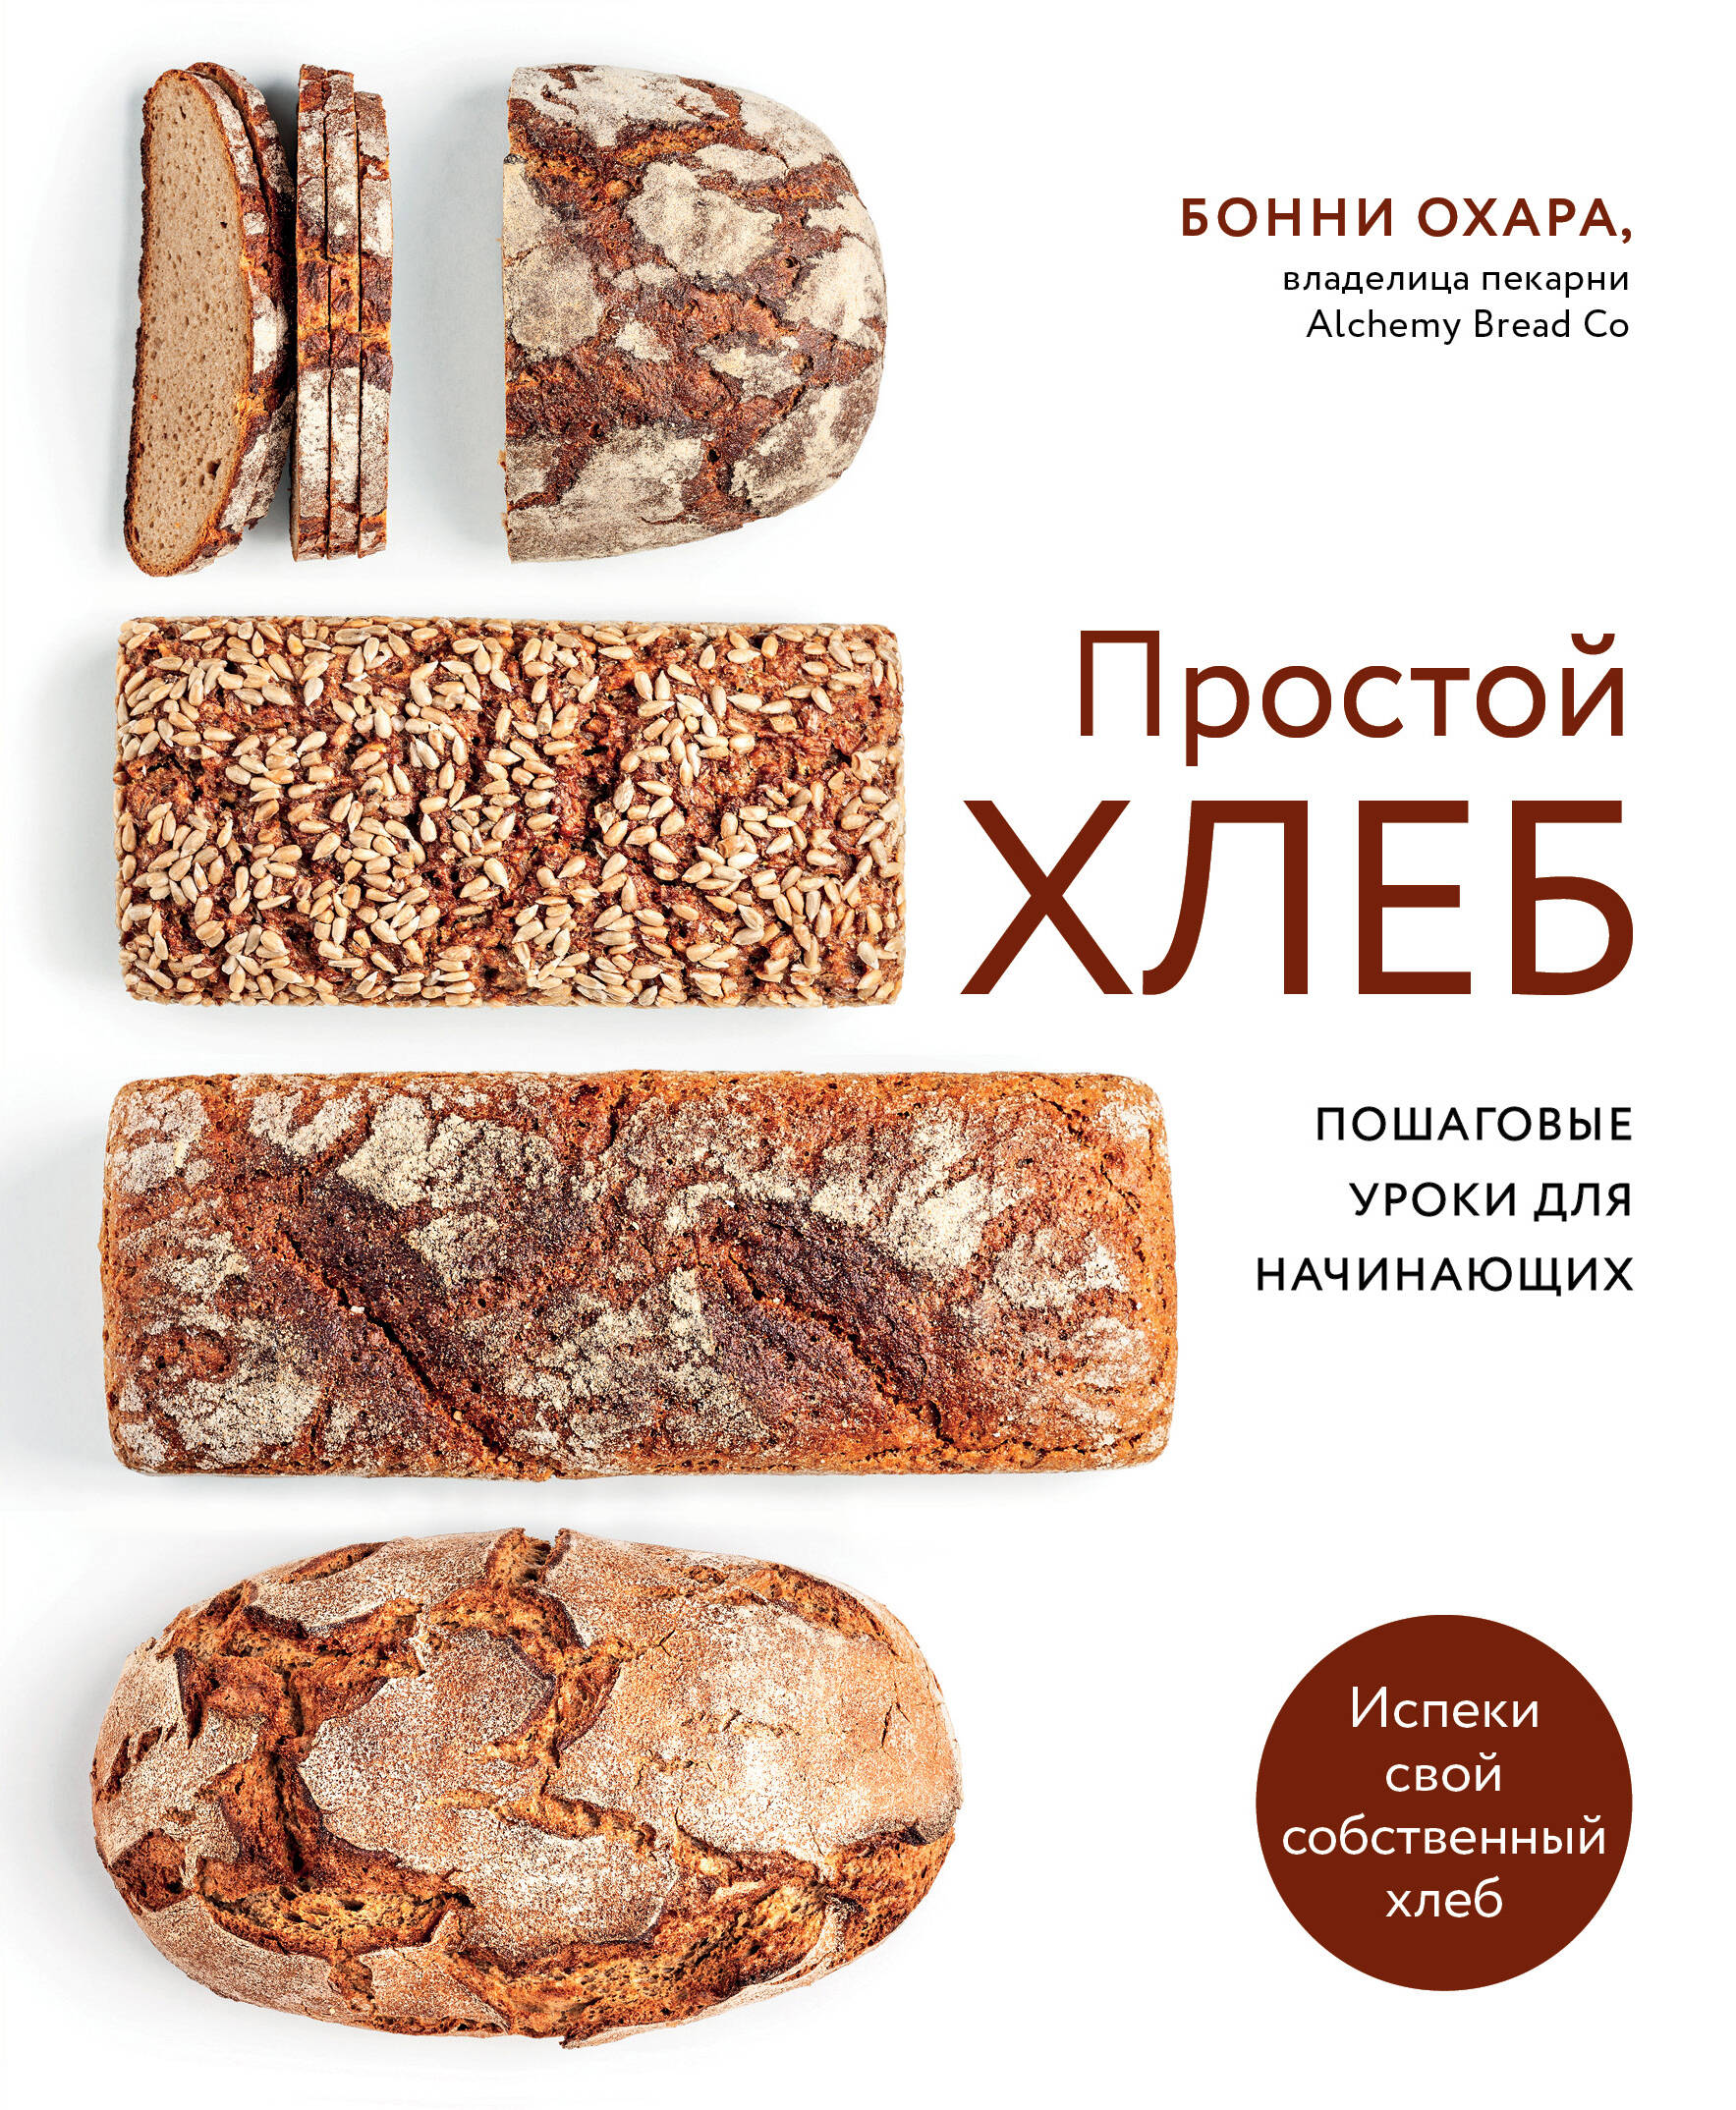 Охара Бонни Простой хлеб Пошаговые уроки для начинающих простой хлеб пошаговые уроки для начинающих охара б